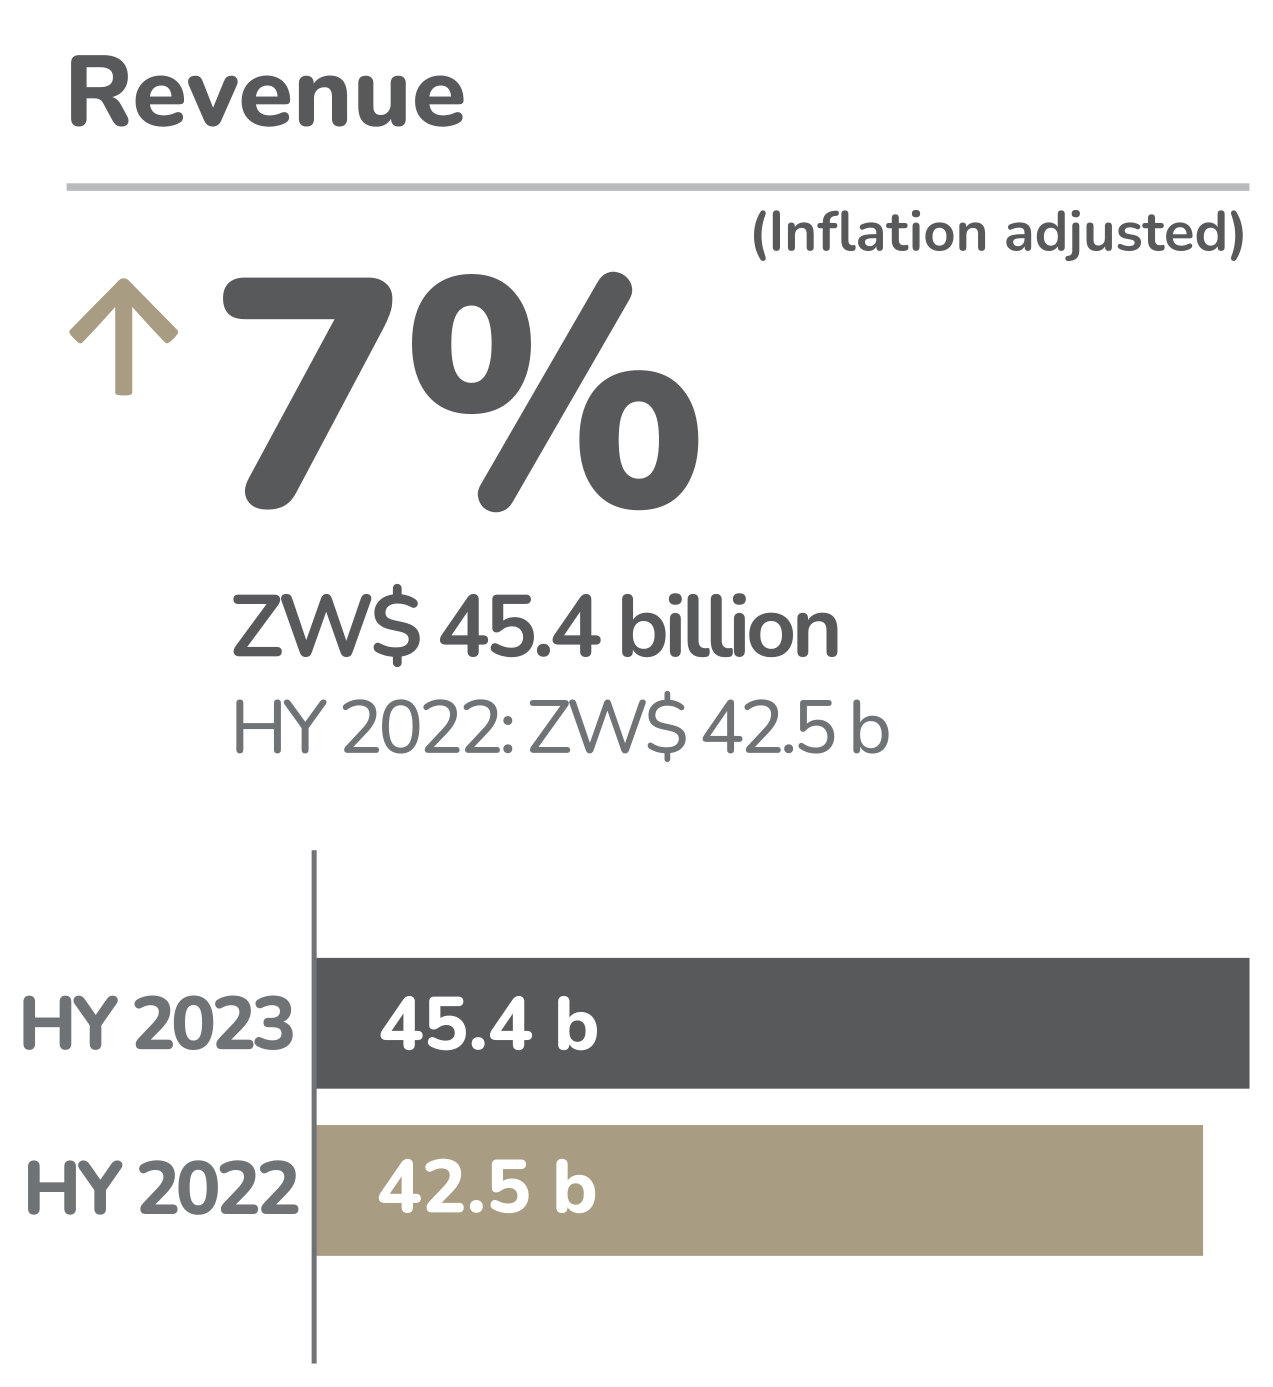 EcoCash HY2023 Revenue: Up 7%